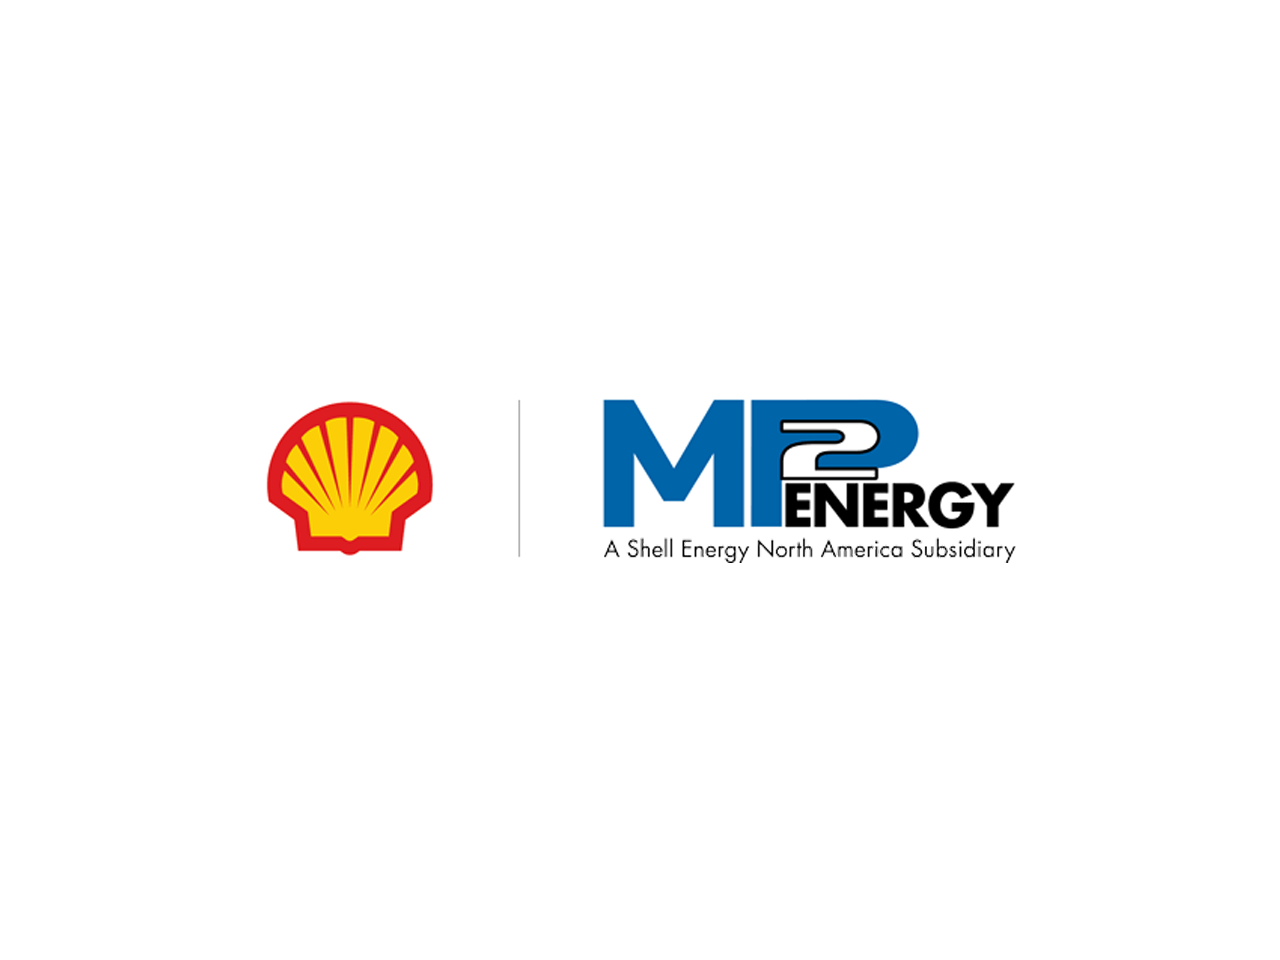 M2P-Energy